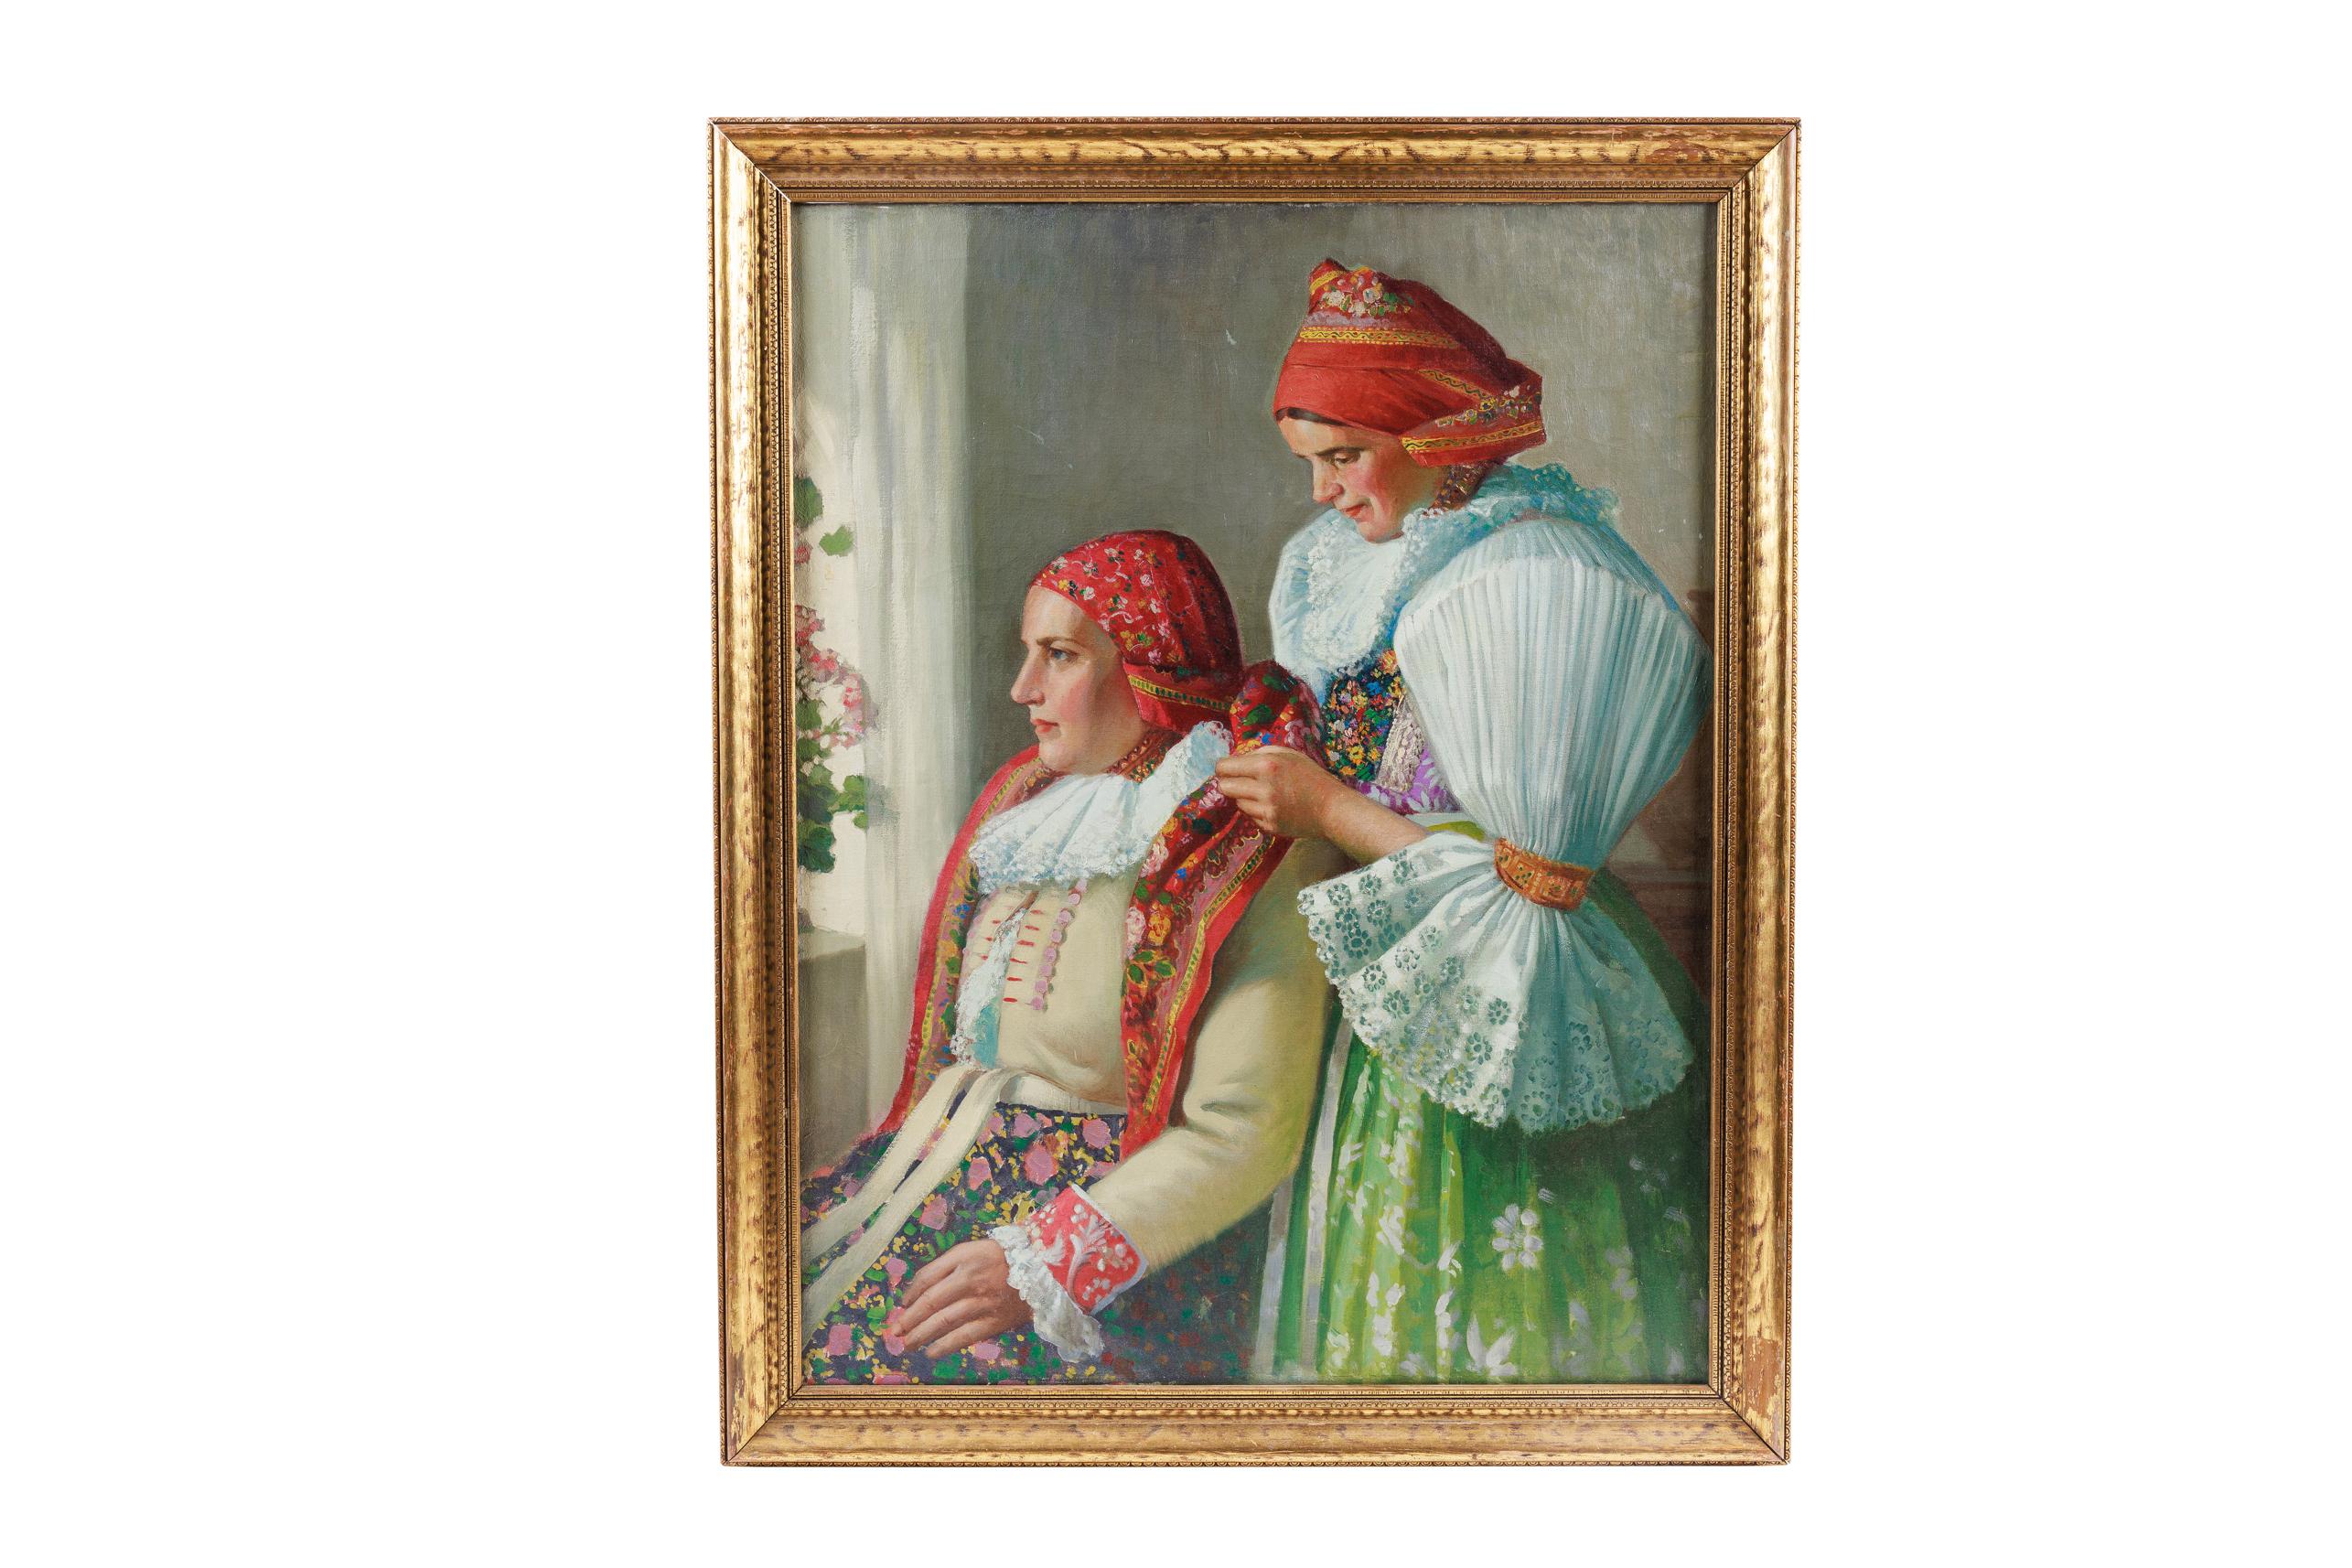 Attribué à Joza Uprka (Tchèque 1861-1940) "Femme slovaque" Une rare peinture à l'huile sur toile

Représentation de deux femmes tchécoslovaques en tenue traditionnelle, l'une aidant l'autre à mettre son foulard, peinte de façon réaliste avec des